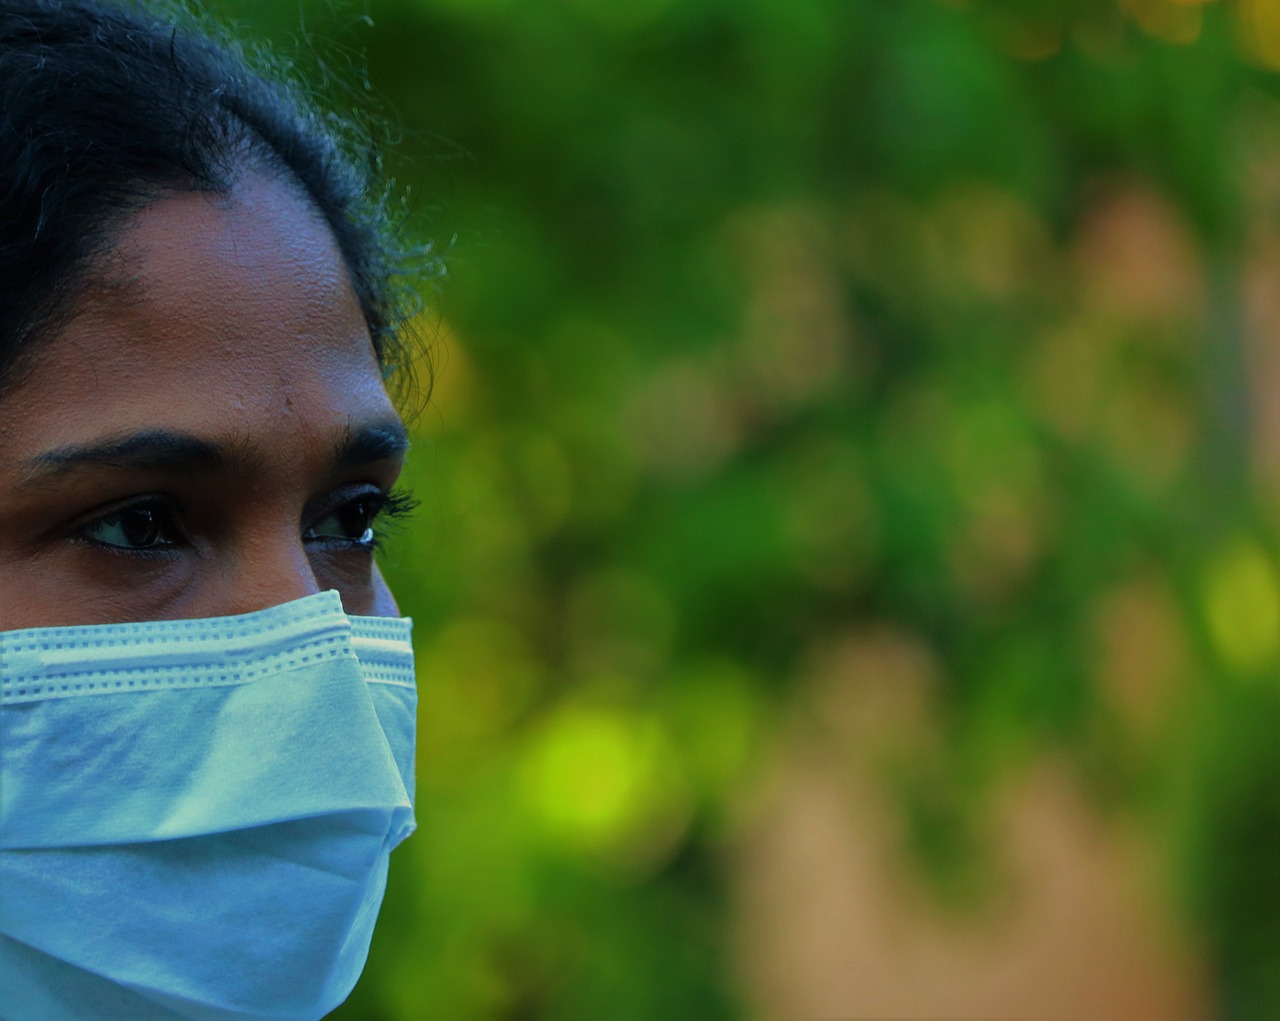 Ministério da Saúde recomenda volta do uso de máscaras após aumento em casos de Covid